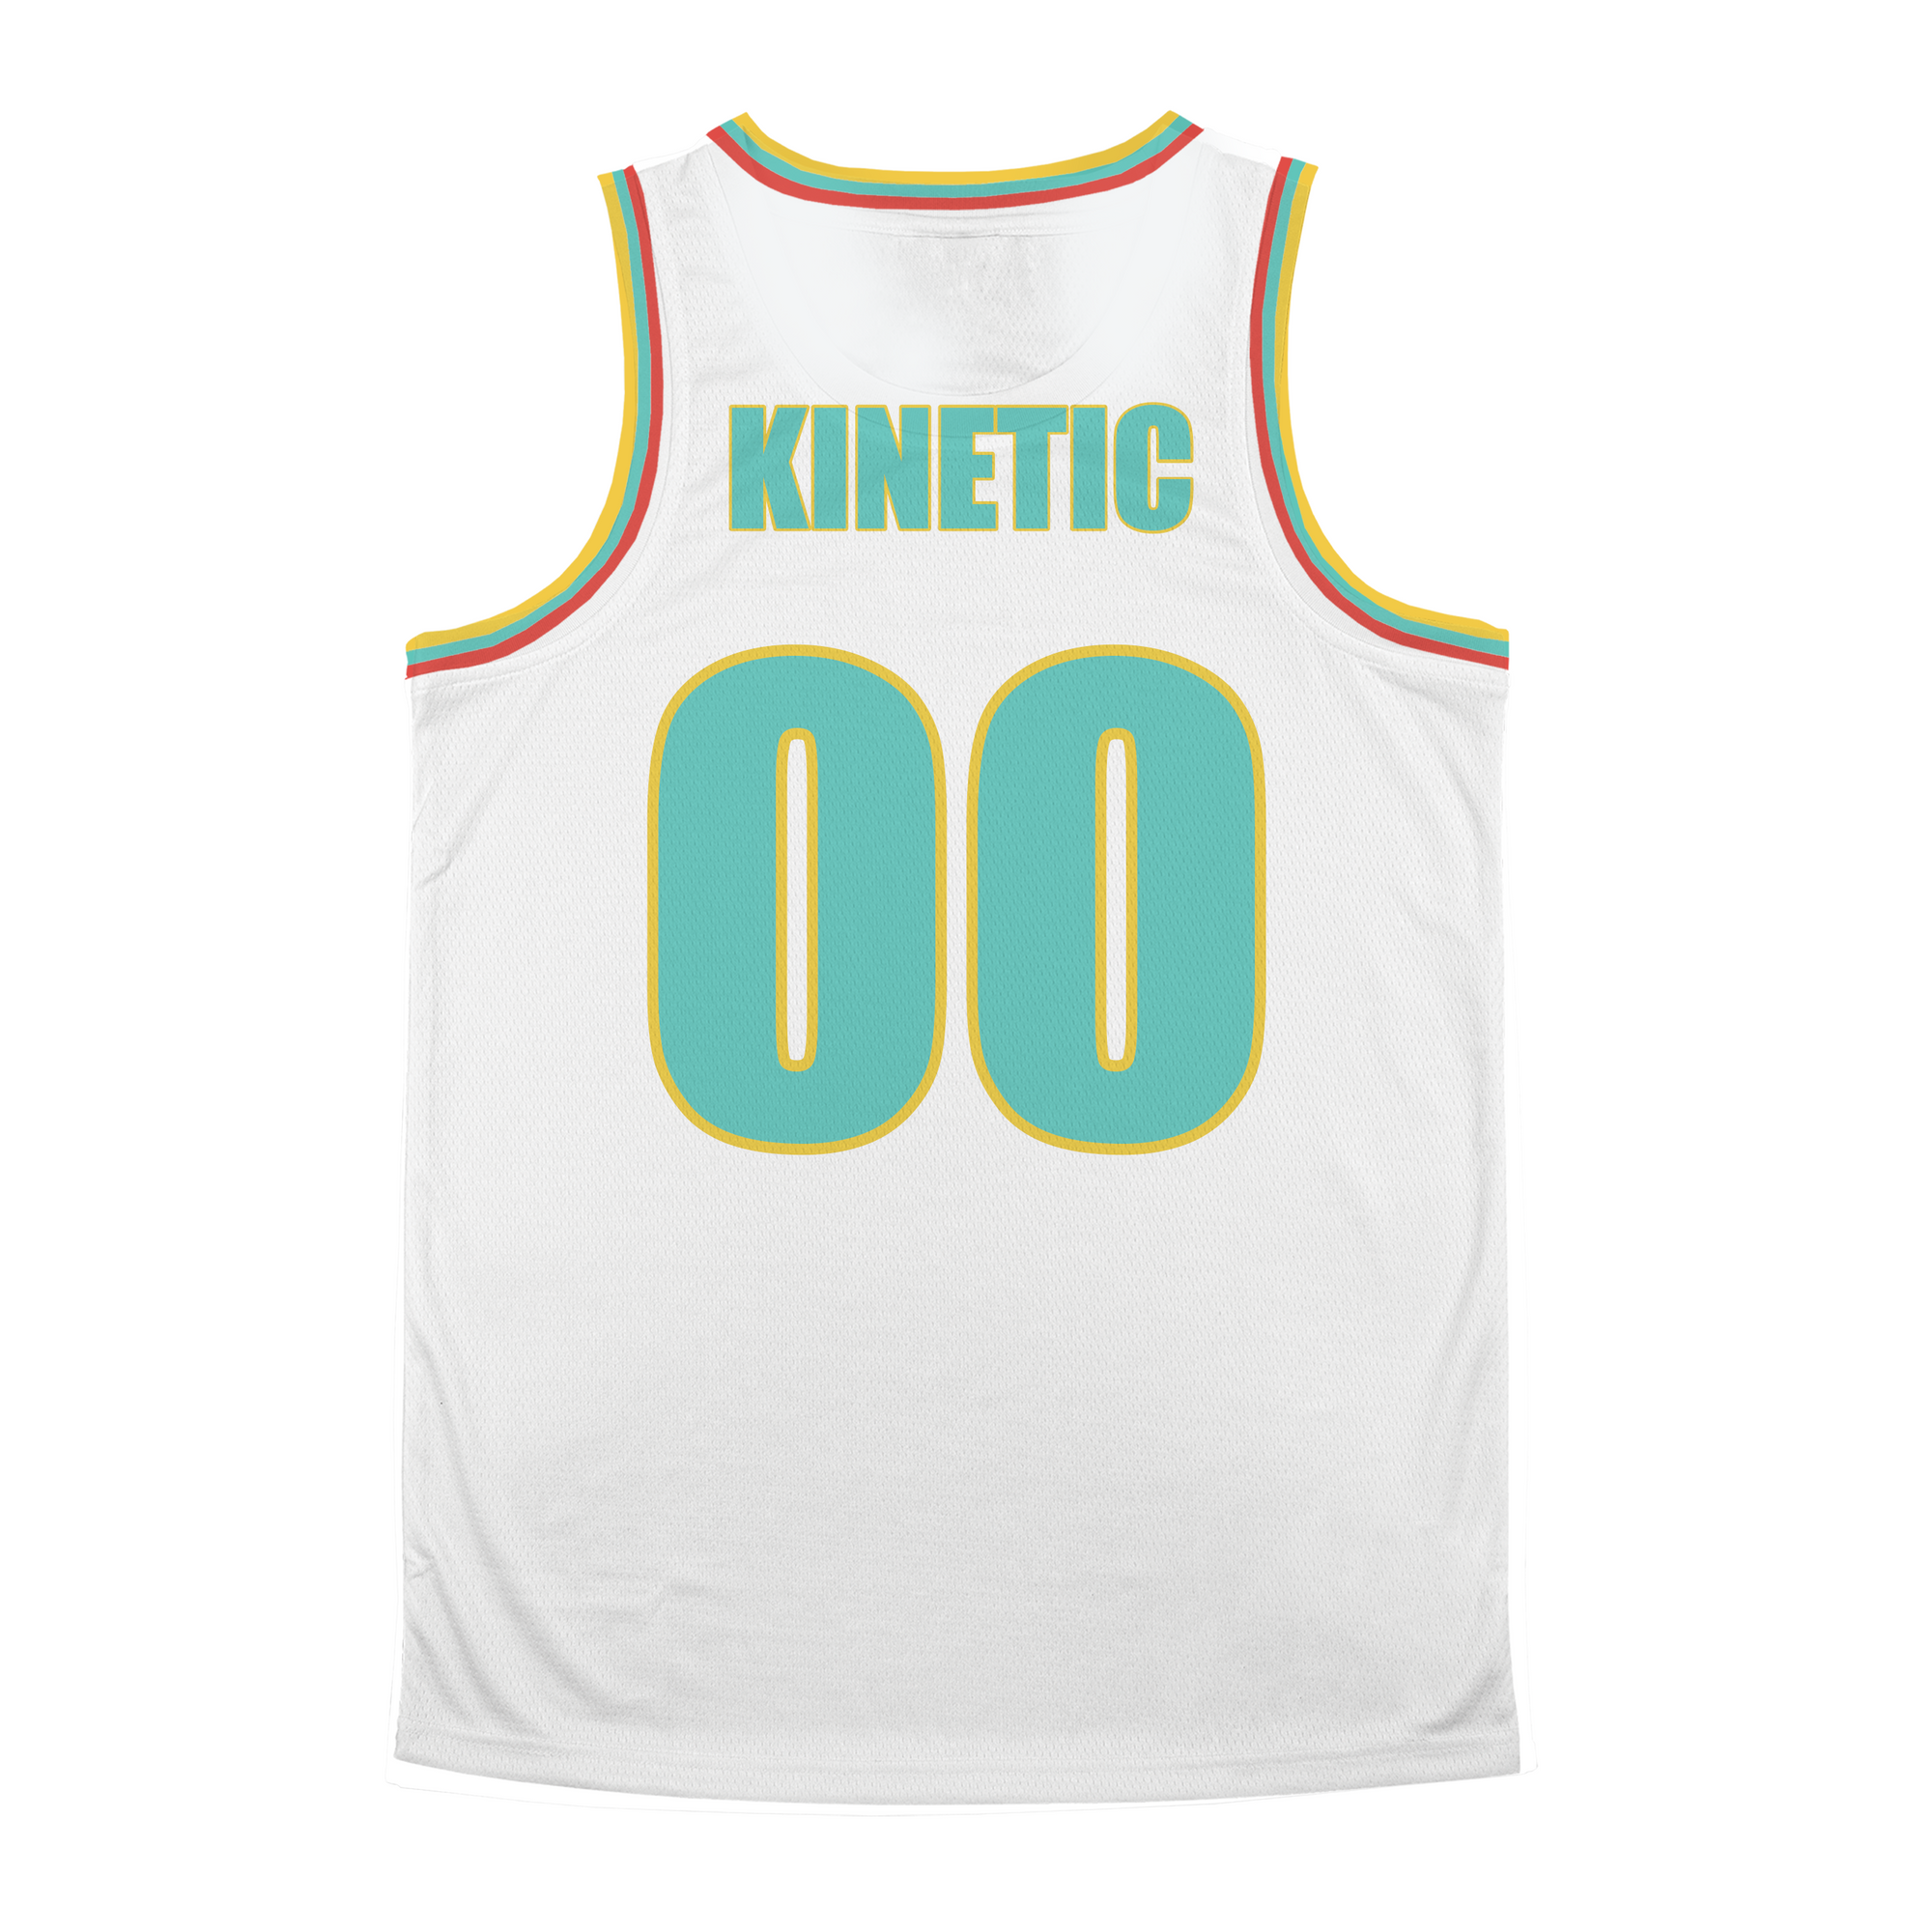 Kappa Sigma - Bolt Basketball Jersey